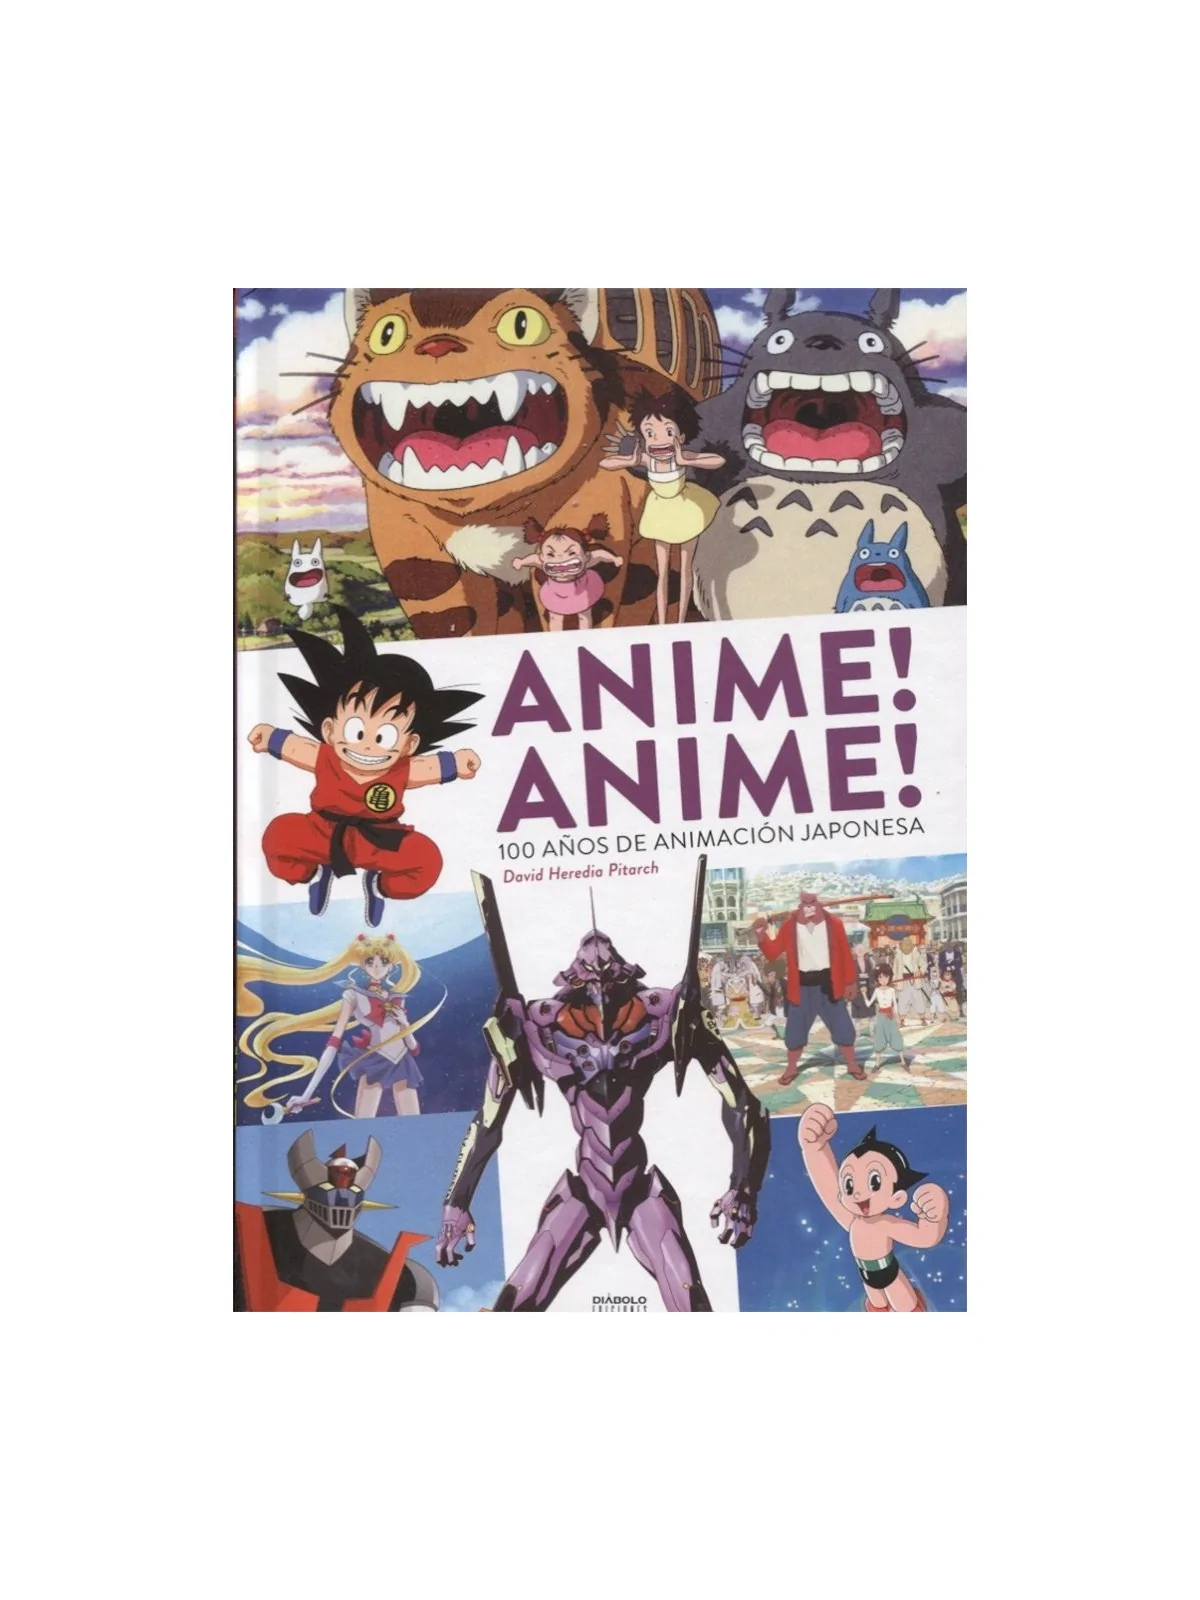 Comprar Anime! Anime! 100 años de Animación Japonesa barato al mejor p